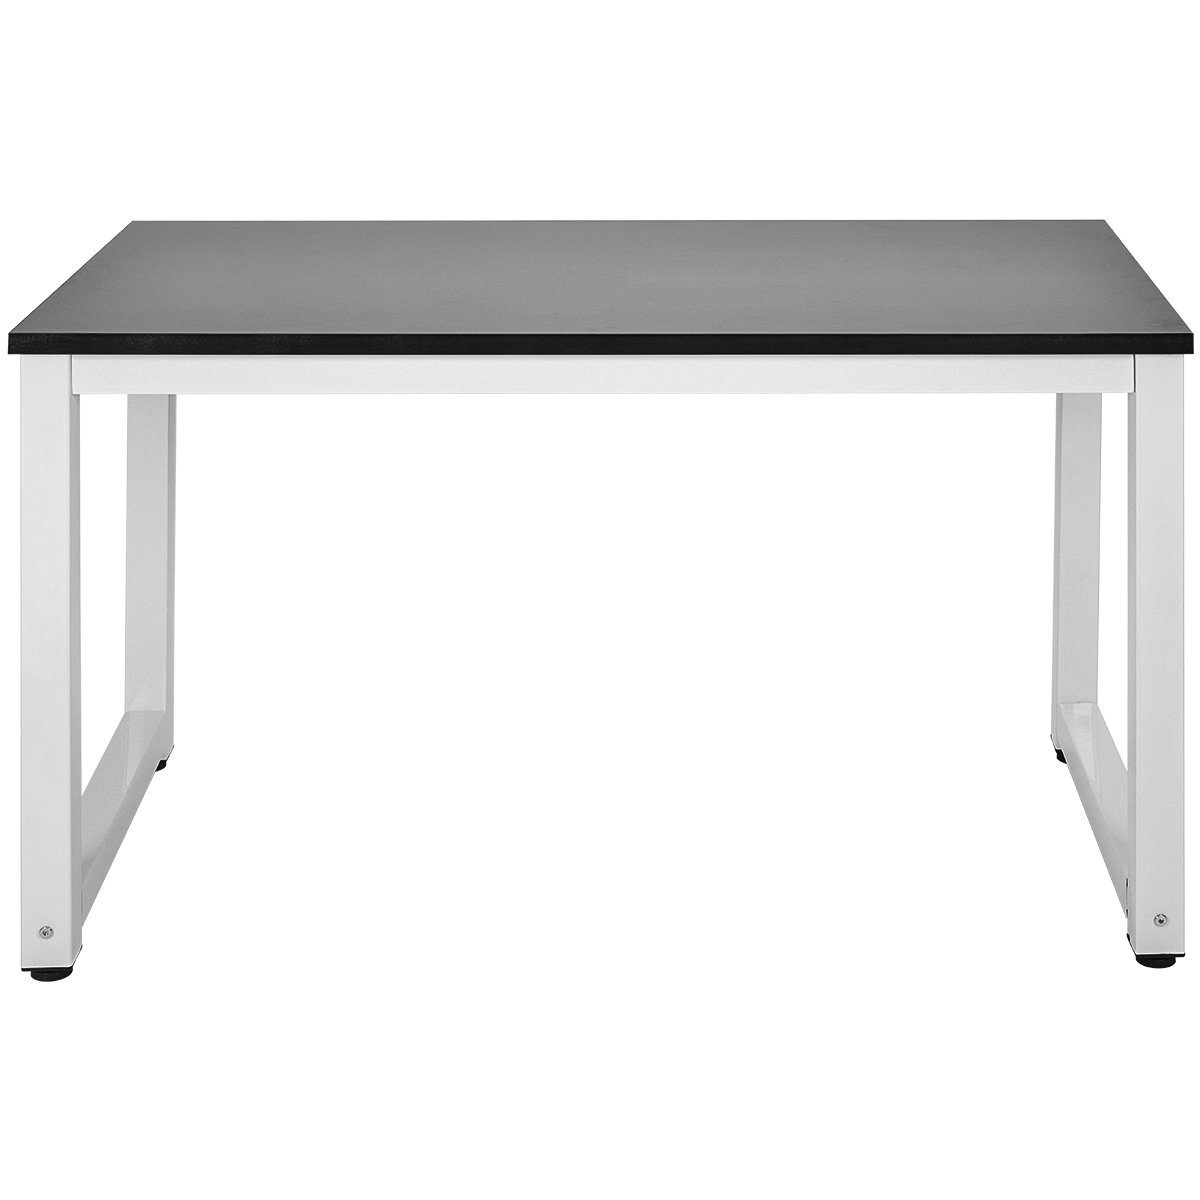 Flieks Schreibtisch, Stahlgestell schwarz 120*60*75cm Arbeitstisch weiß | schwarz | Computertisch